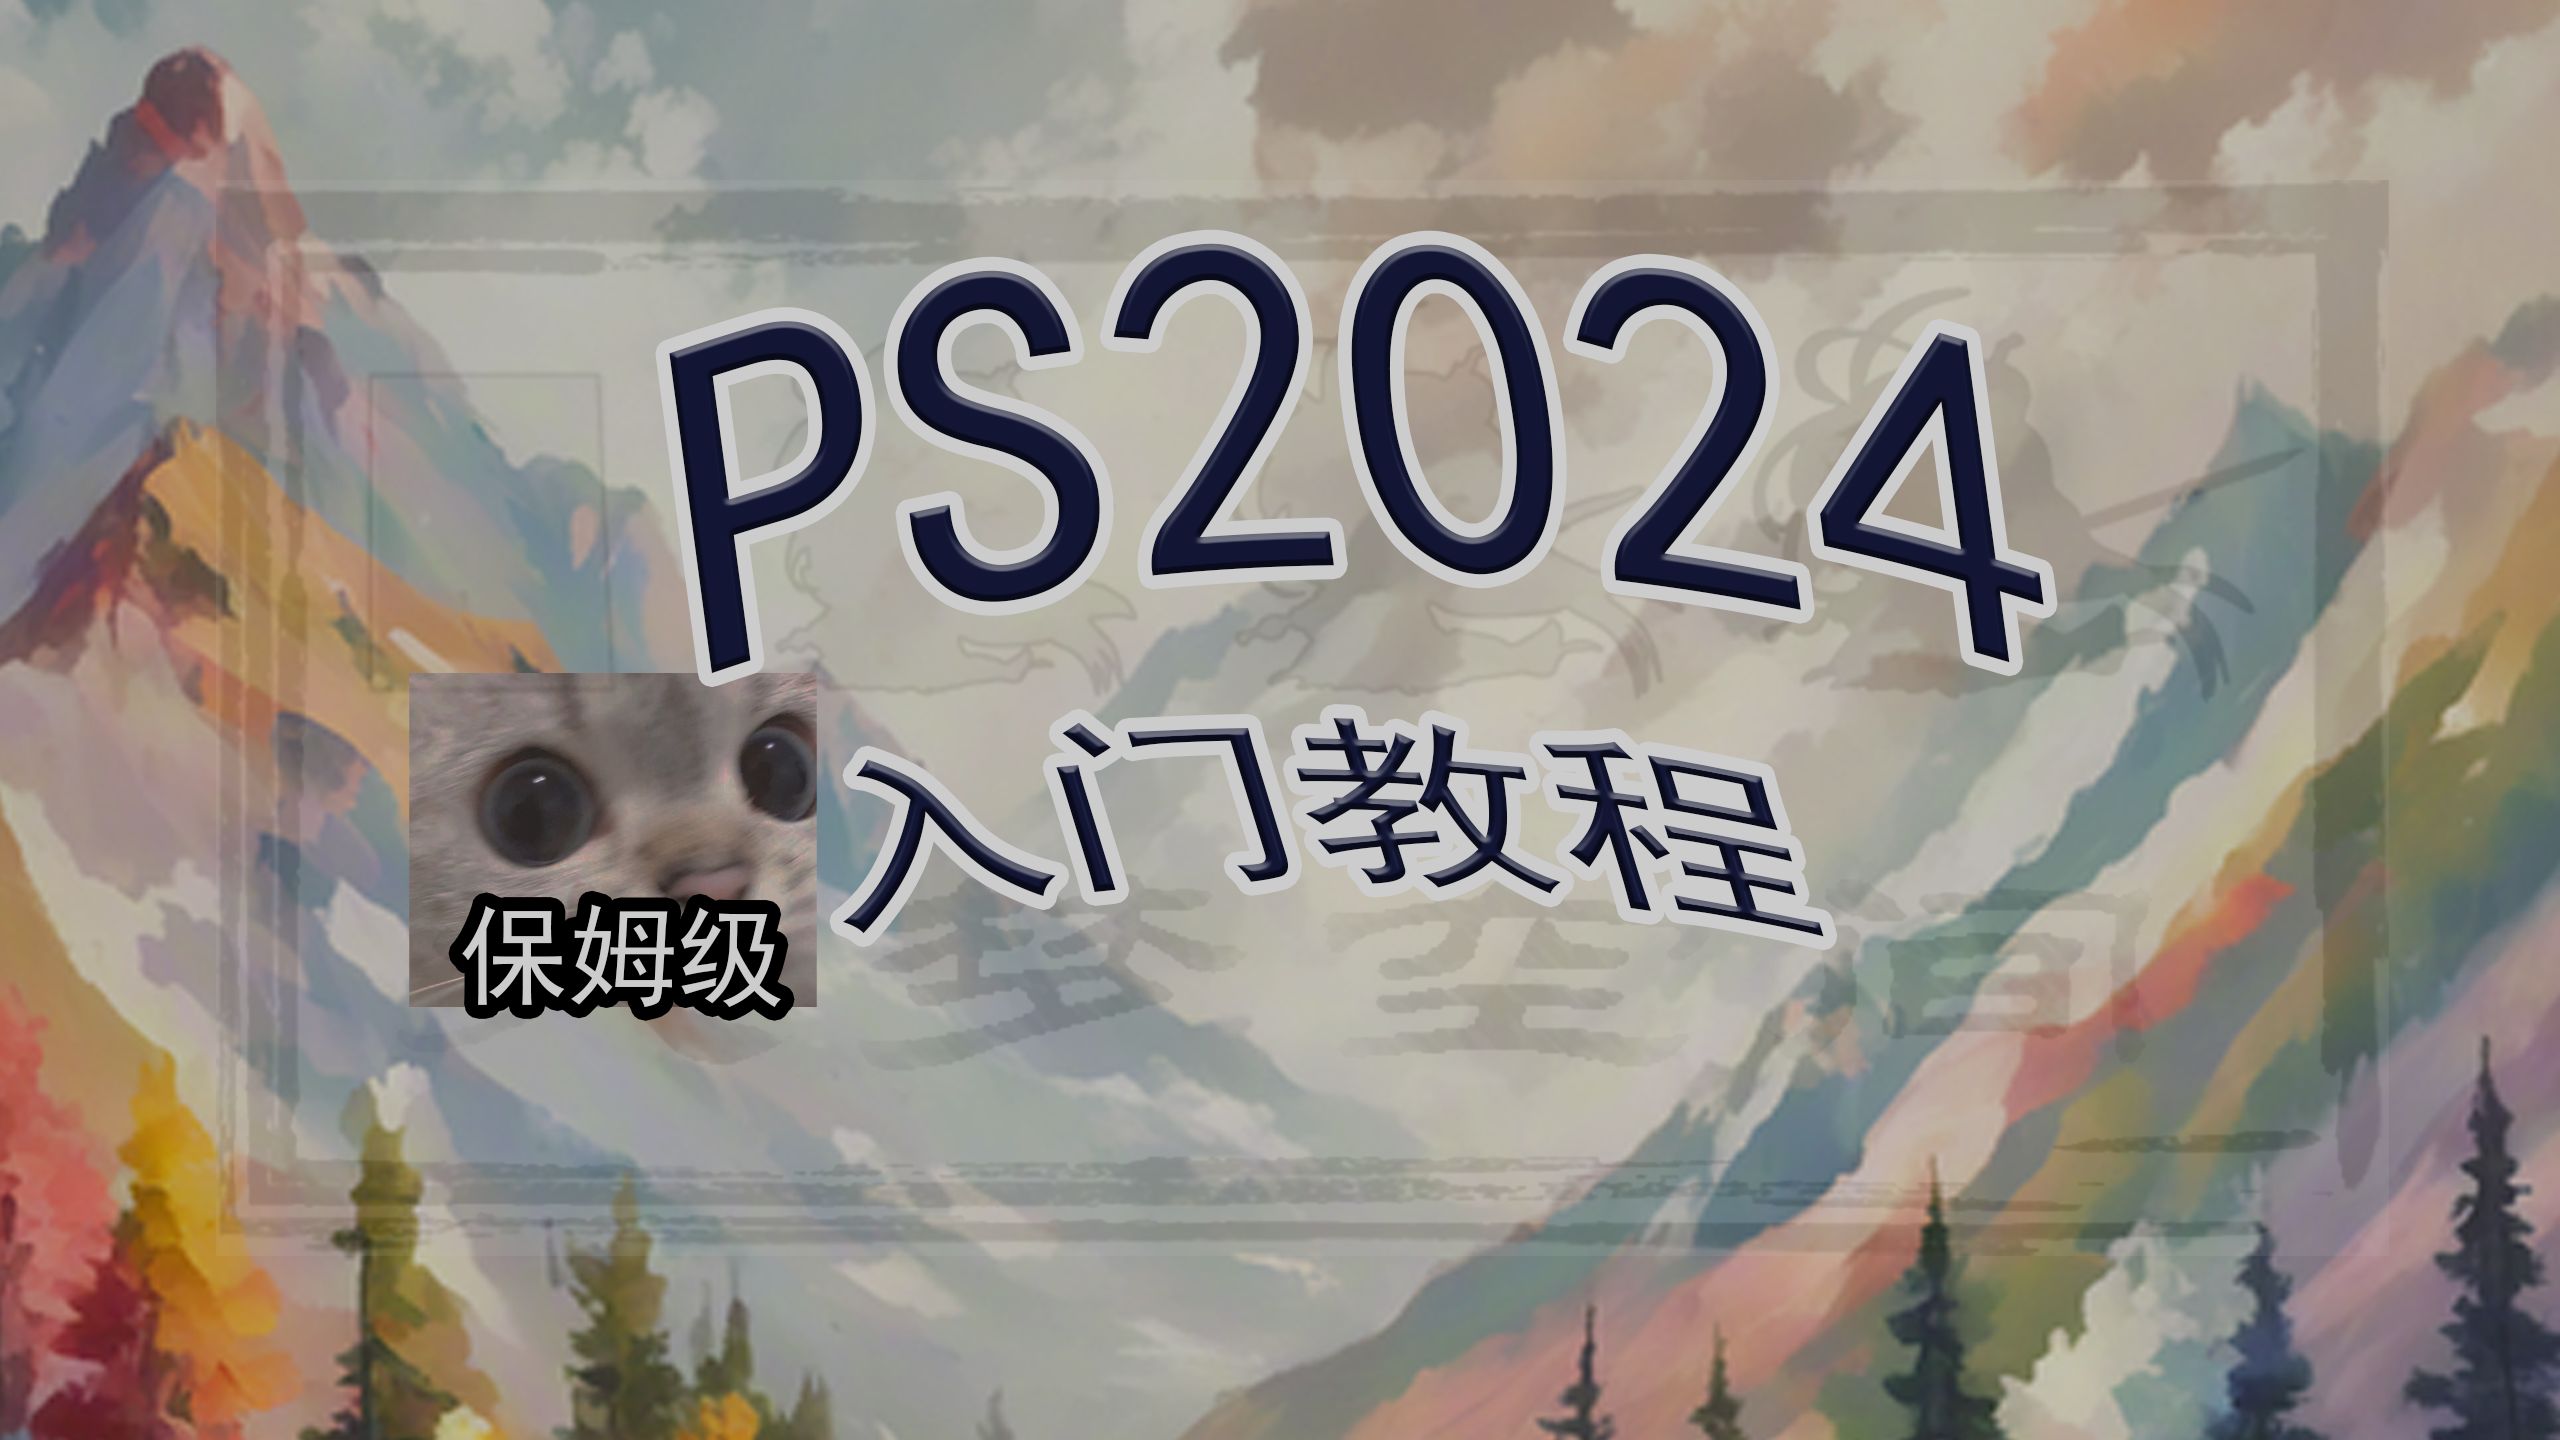 PS2024保姆级新手入门教程06打开图片、插入图片